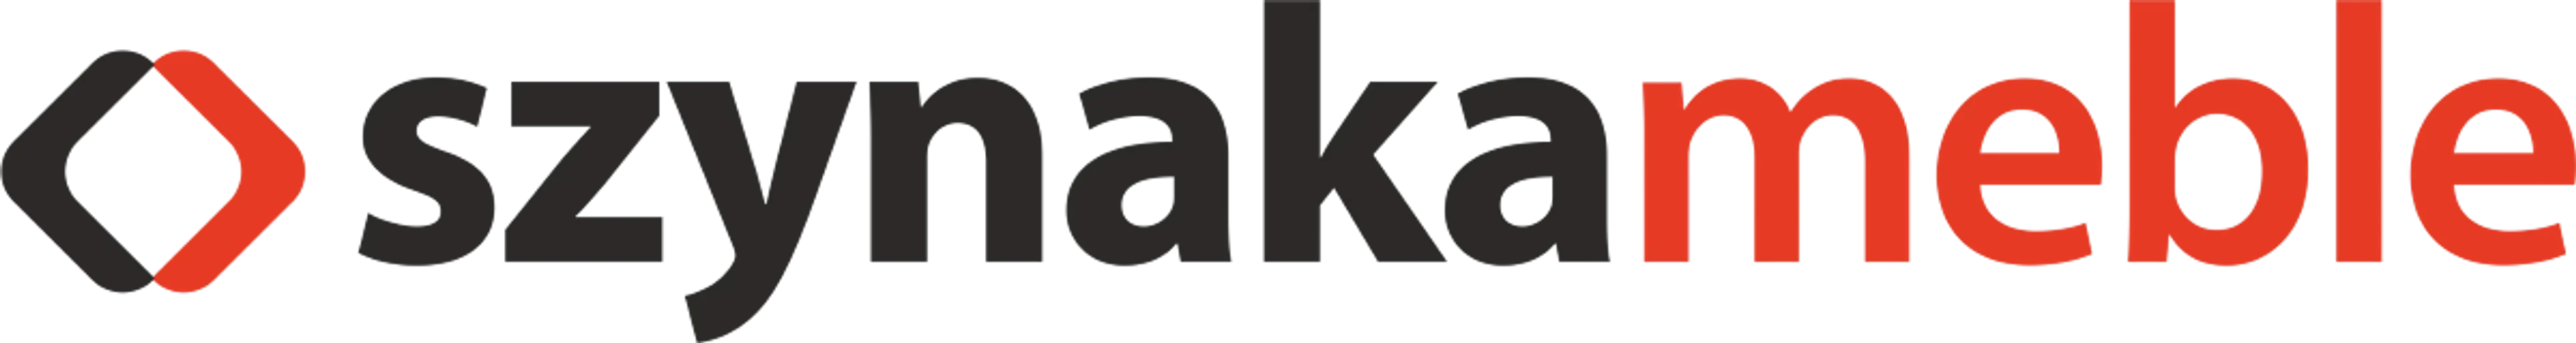 SZYNAKA MEBLE logo